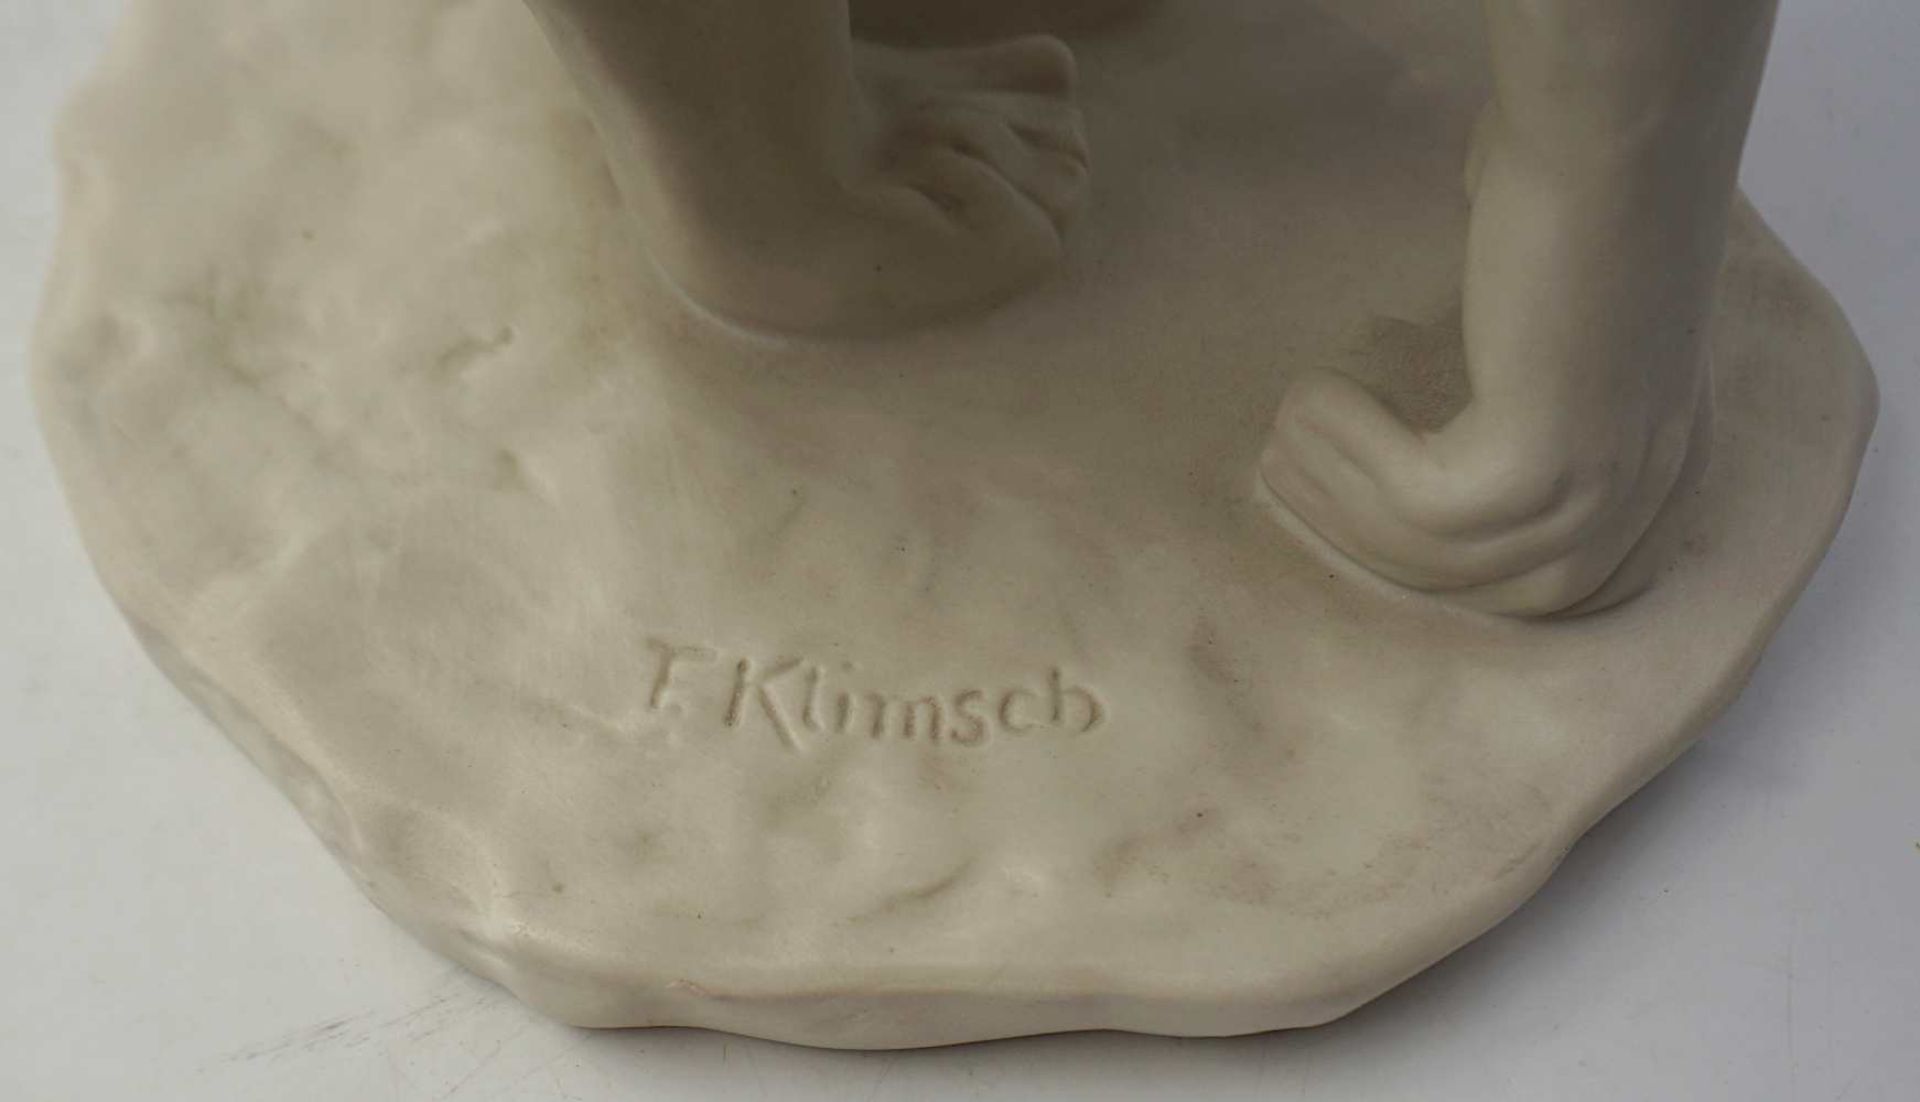 1 Figur Bisquitporzellan ROSENTHAL "Die Hockende" Design: F. KLIMSCH (wohl Fritz K. 18 - Bild 5 aus 5